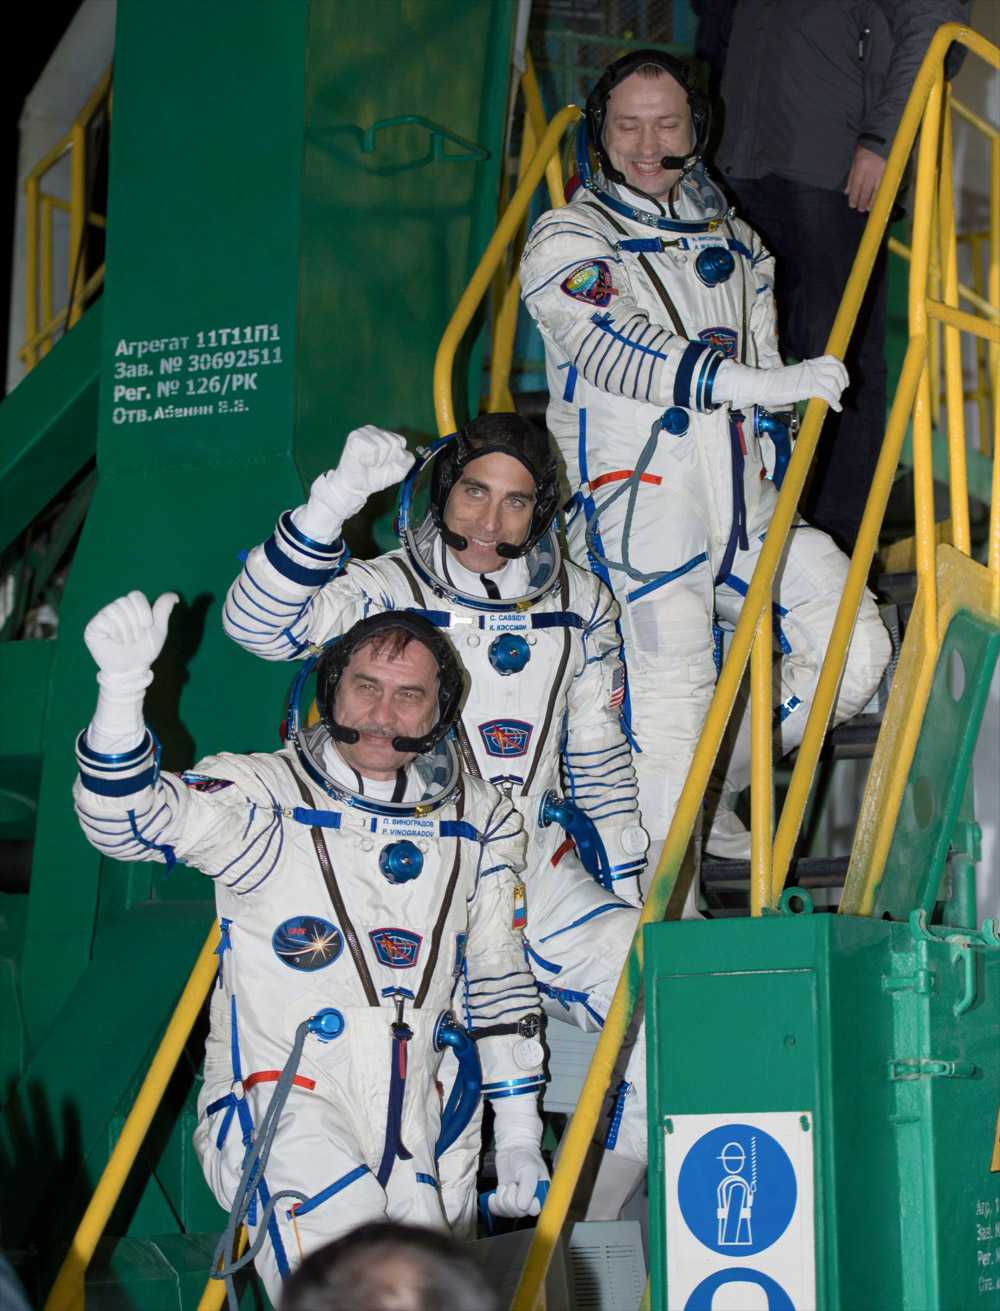 Les trois membres de l’Expedition 35. Ils ont rejoint l’équipage à bord de l’ISS avec à sa tête l'astronaute Chris Hadfield, le premier Canadien à commander la Station. © Carla Cioffi, Nasa 